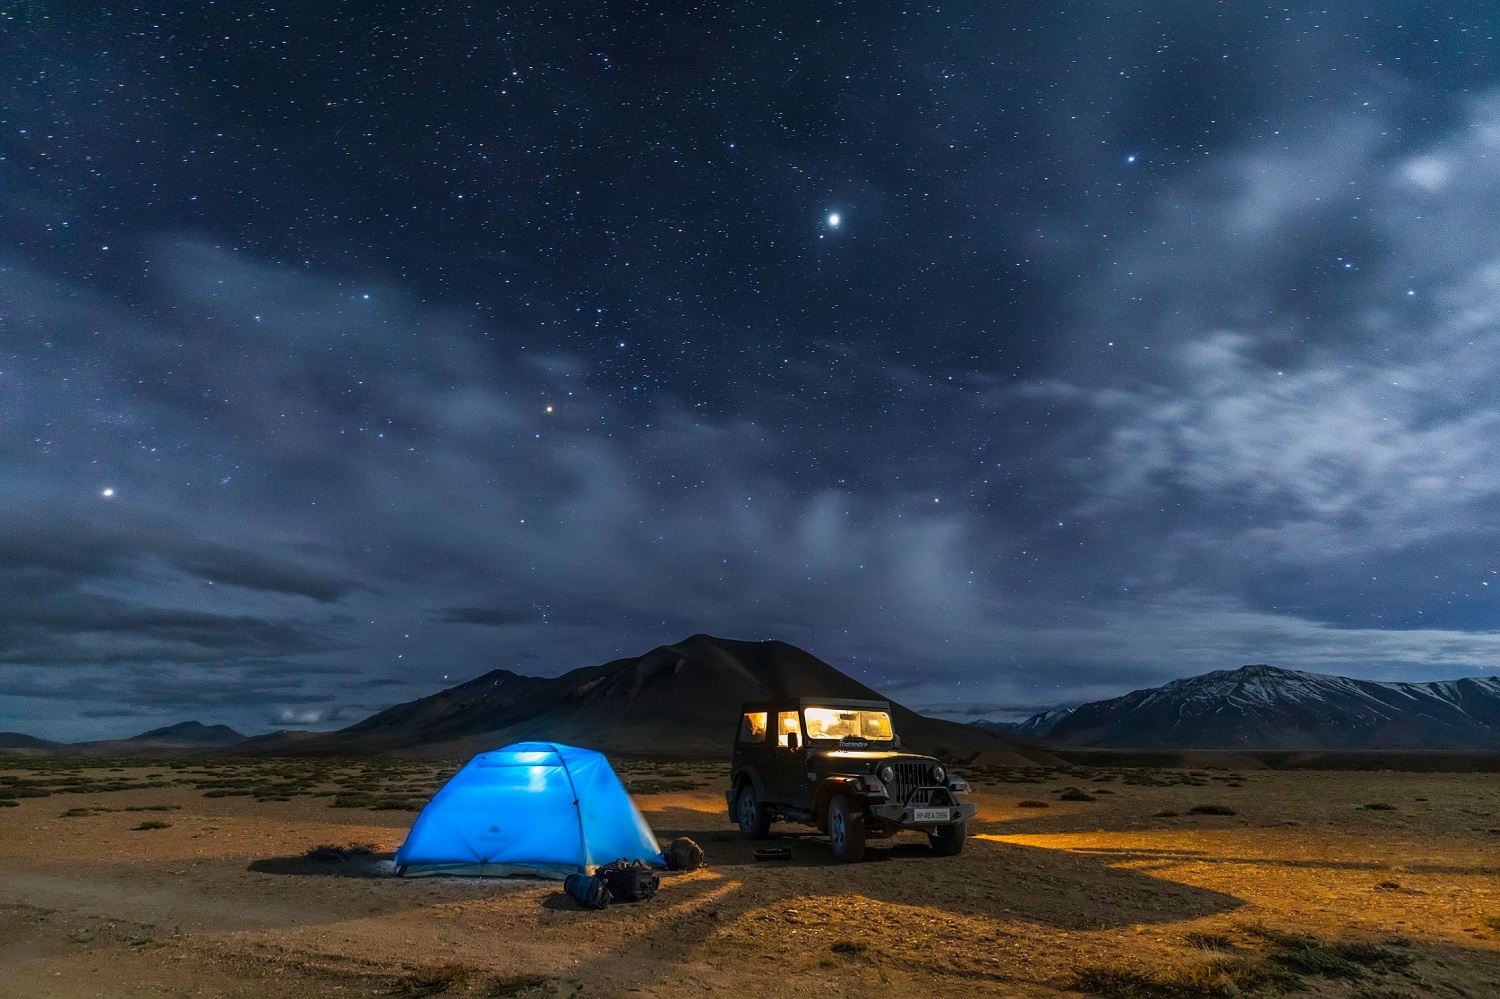 09 điểm cắm trại tại ladakh mà bạn không thể bỏ qua